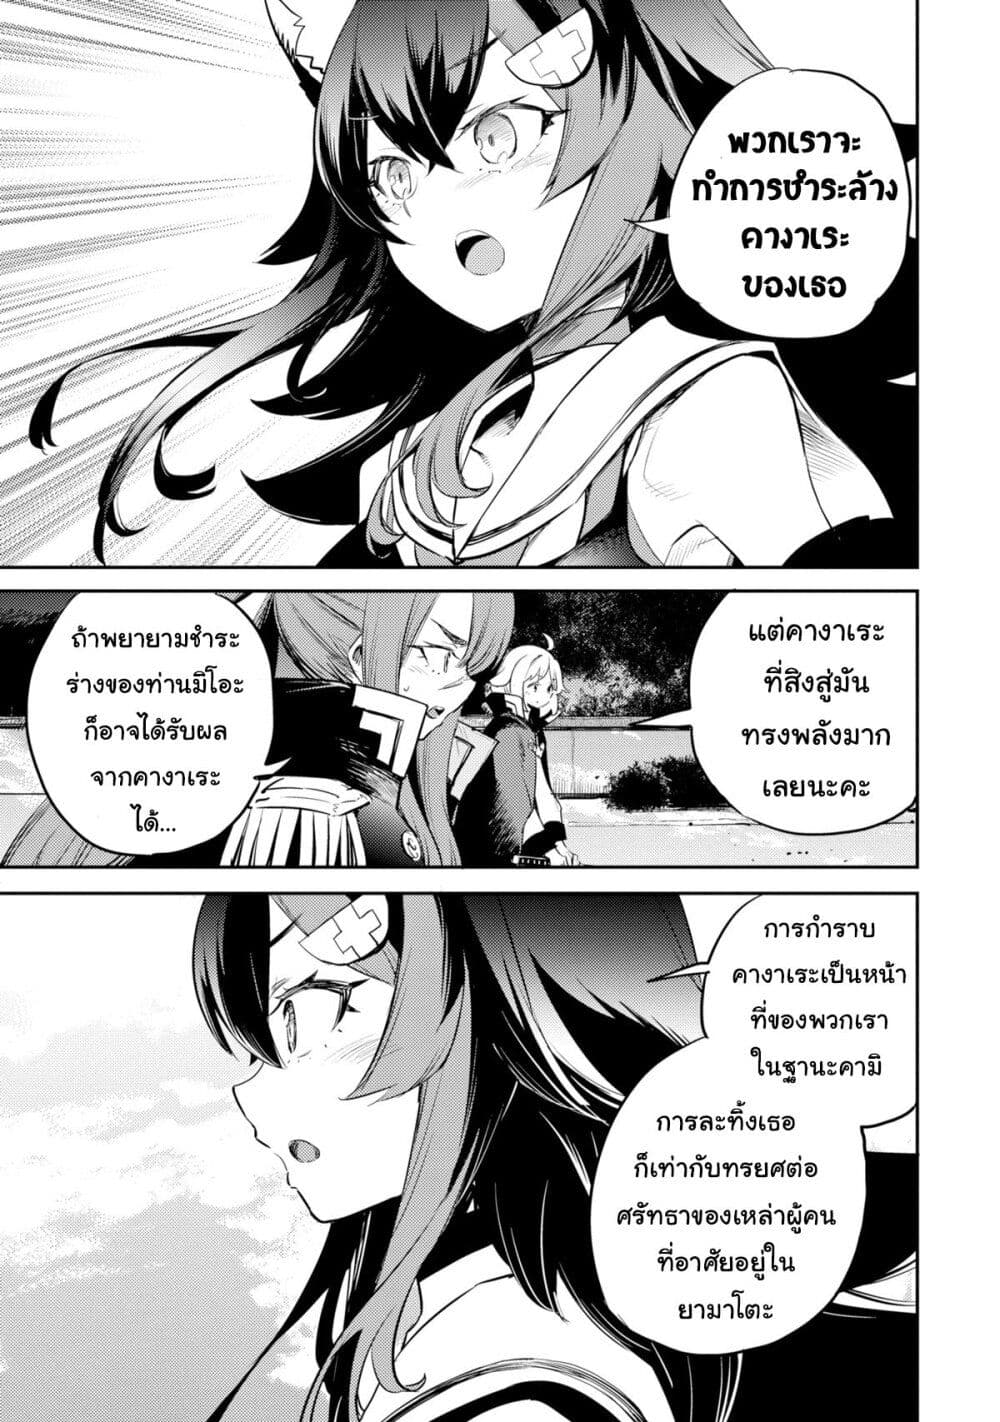 Holoearth Chronicles SideE ~Yamato Phantasia~ ตอนที่ 15 (3)